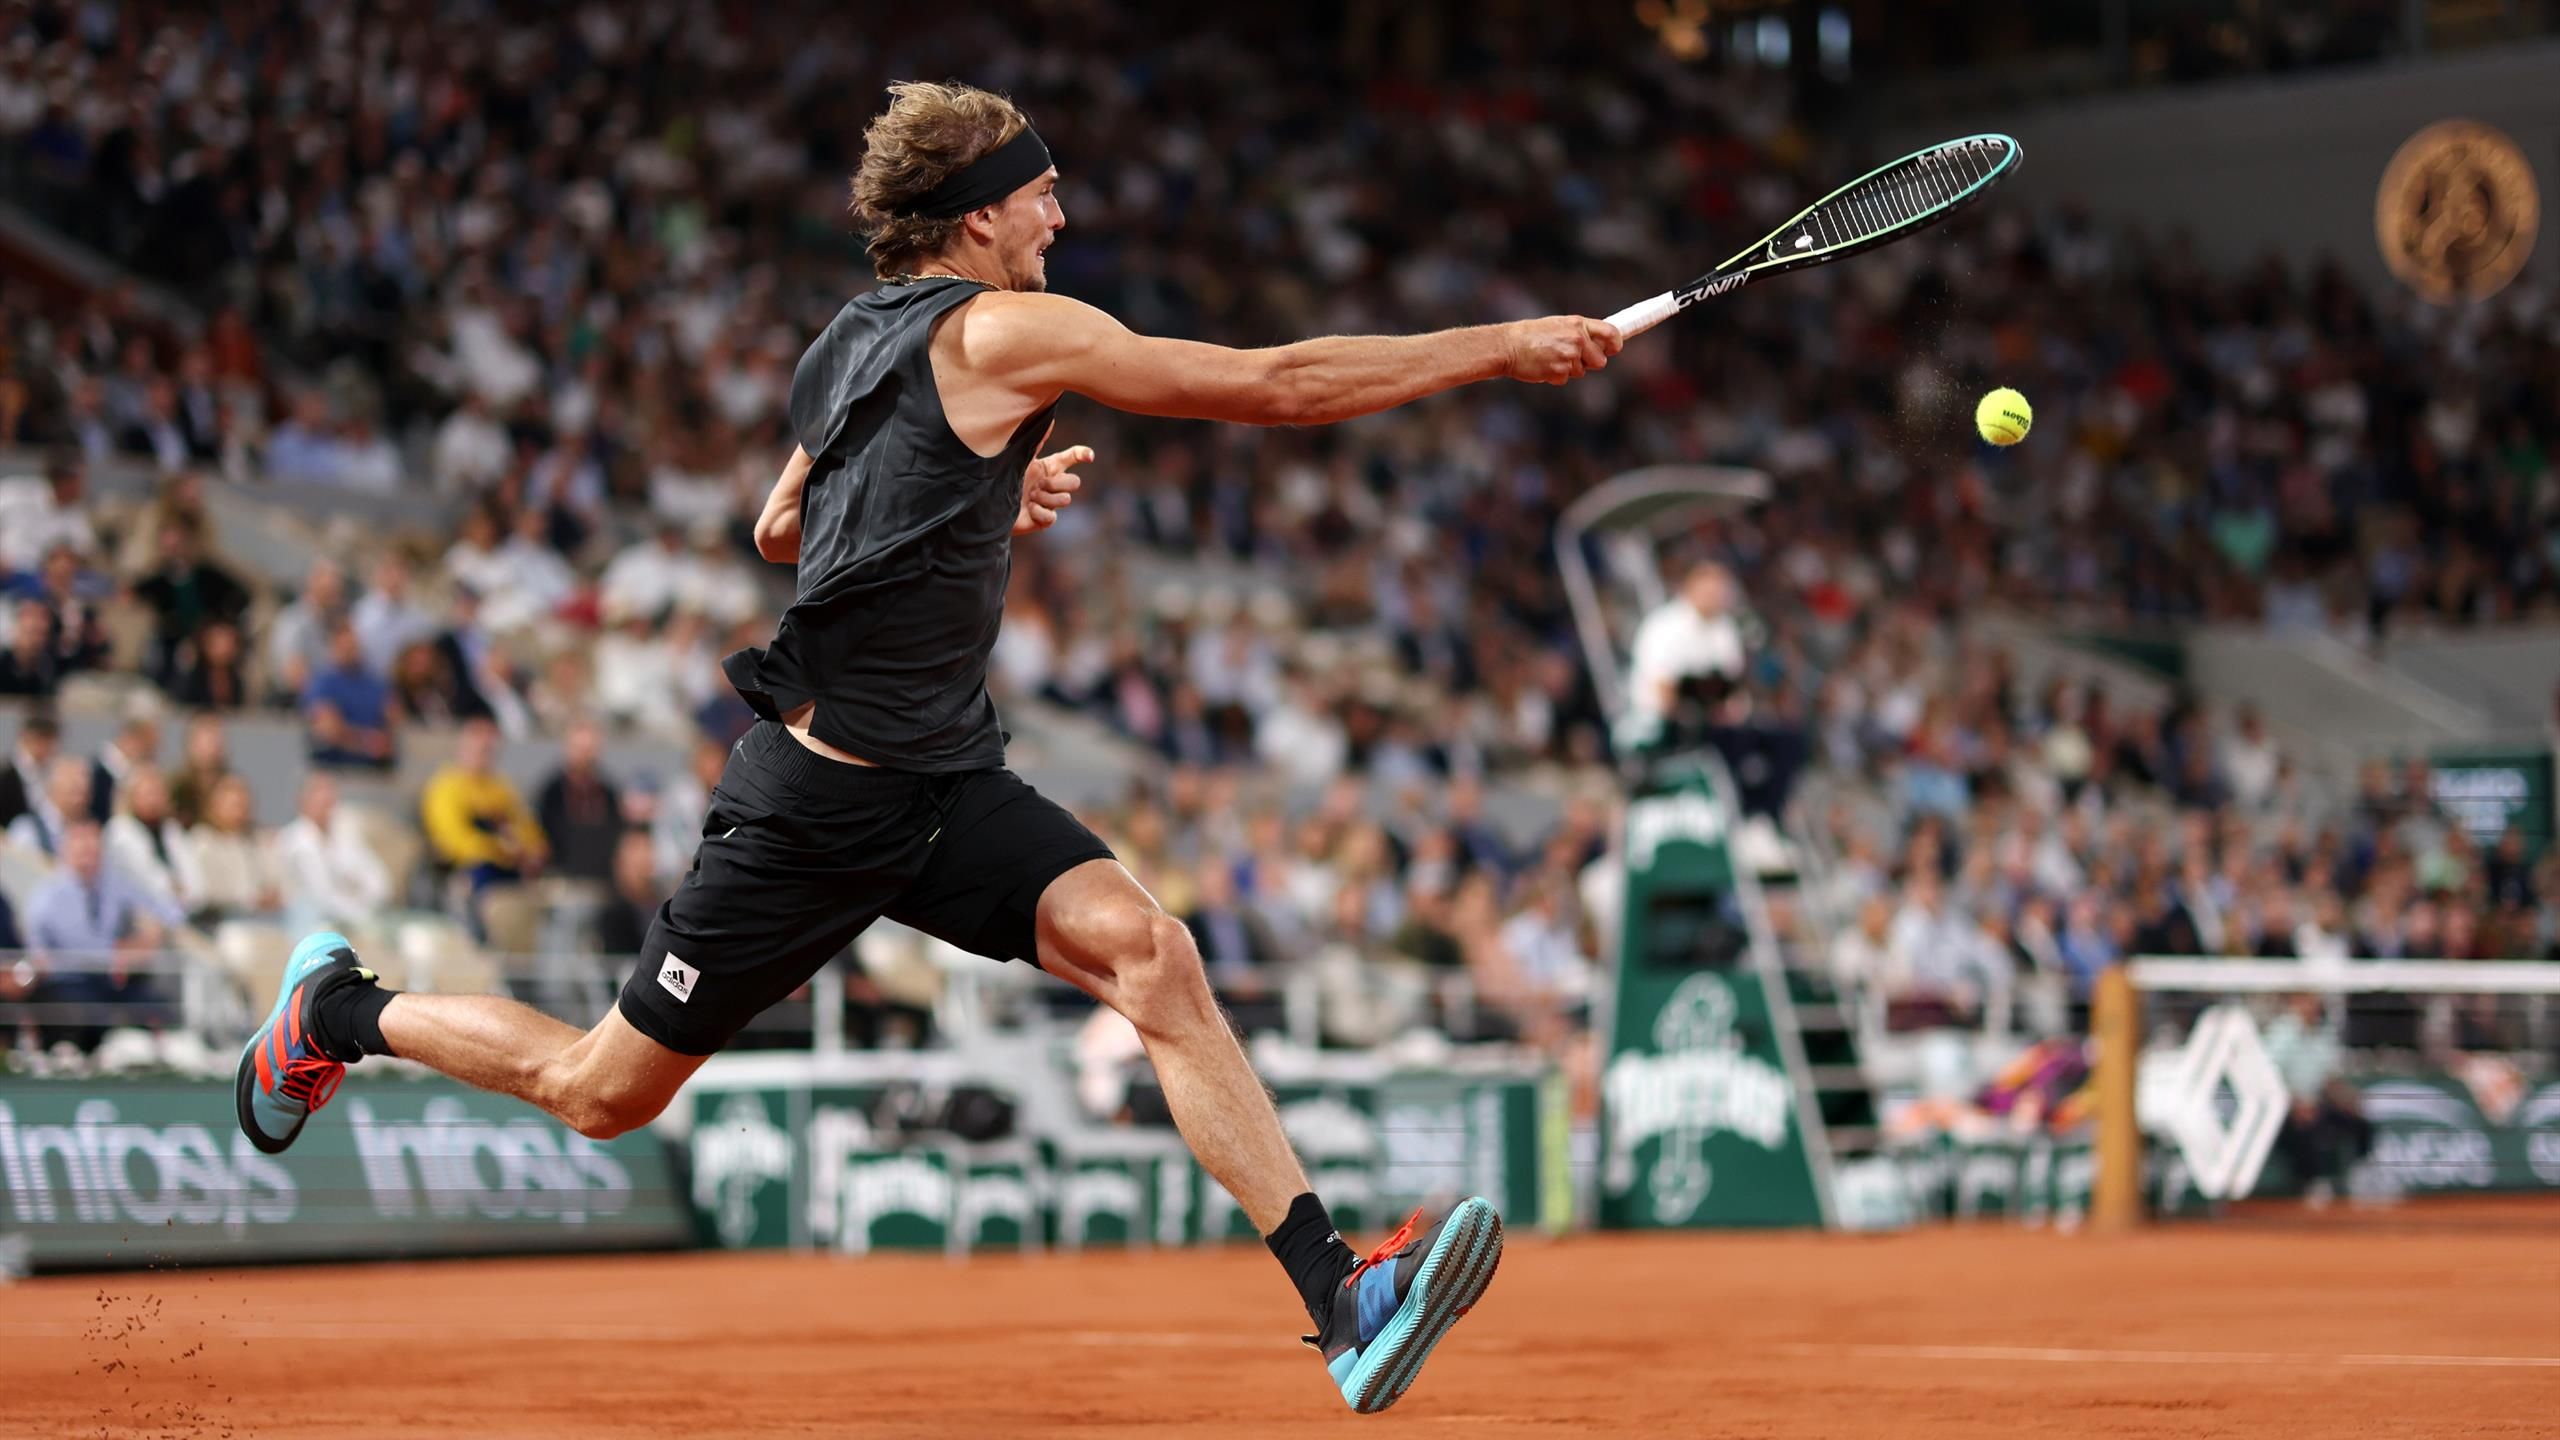 French Open Übertragung Alexander Zverev gegen Rafael Nadal jetzt live - Halbfinale im TV, Stream und Ticker